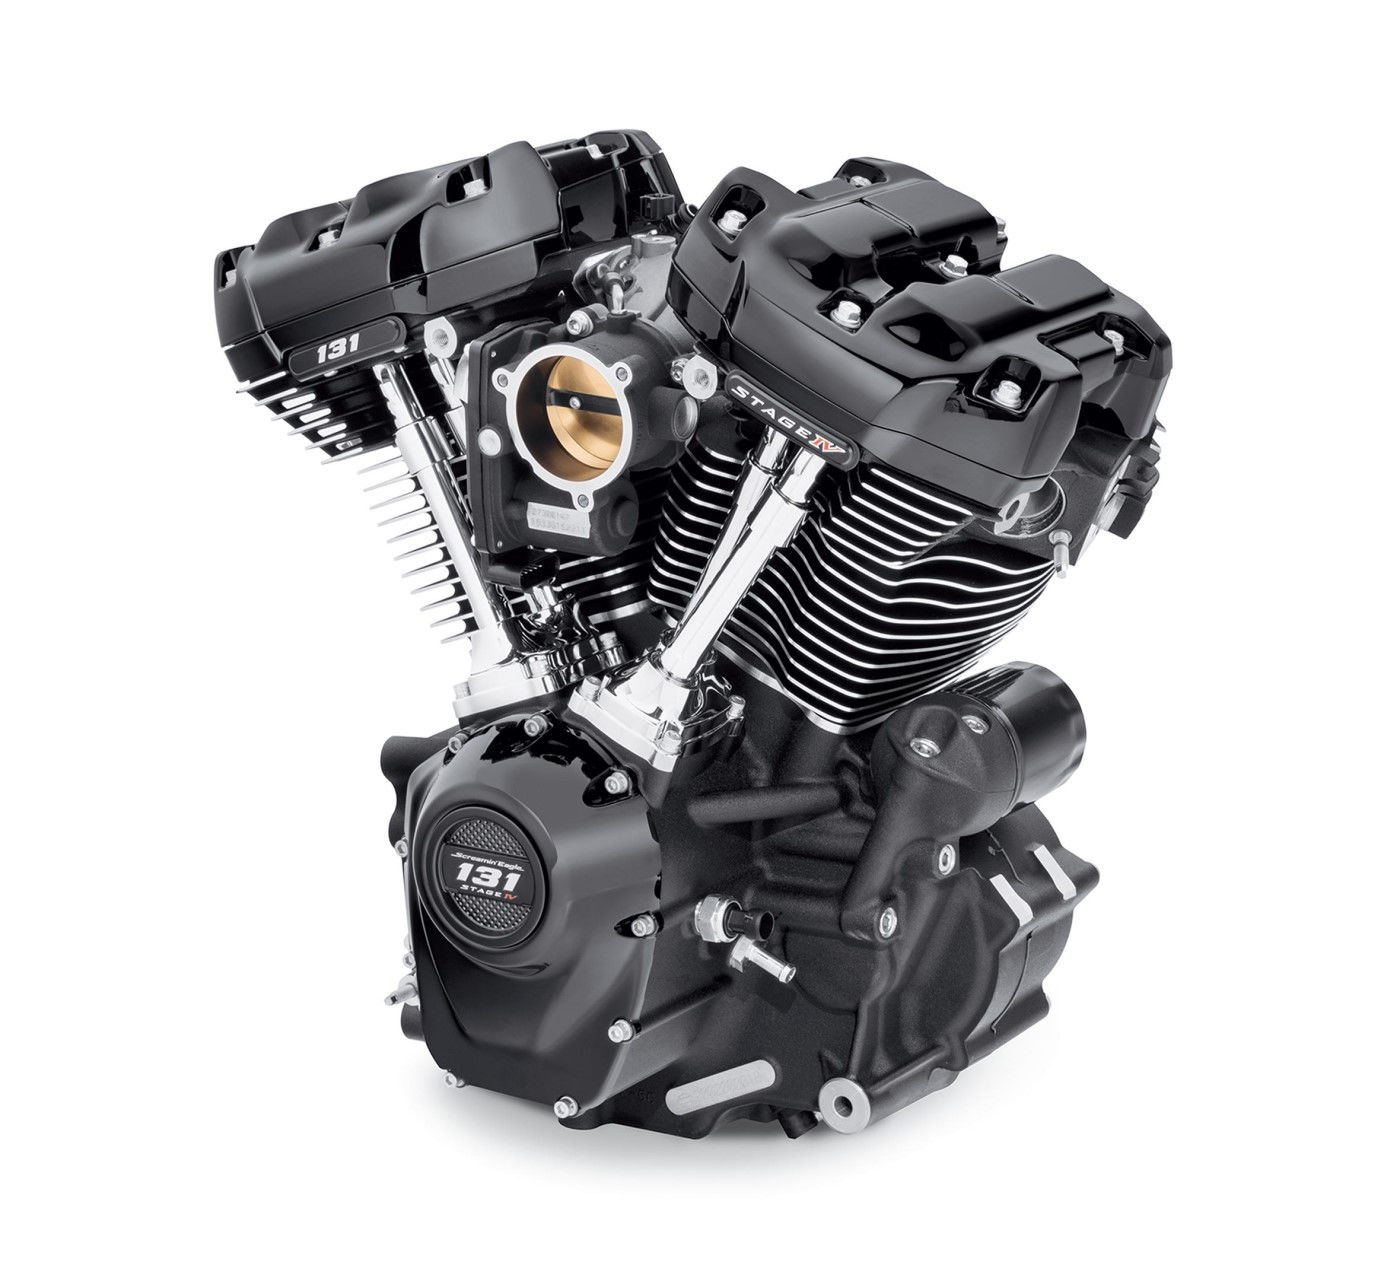 Harley 1200 Engine Promotion Off61